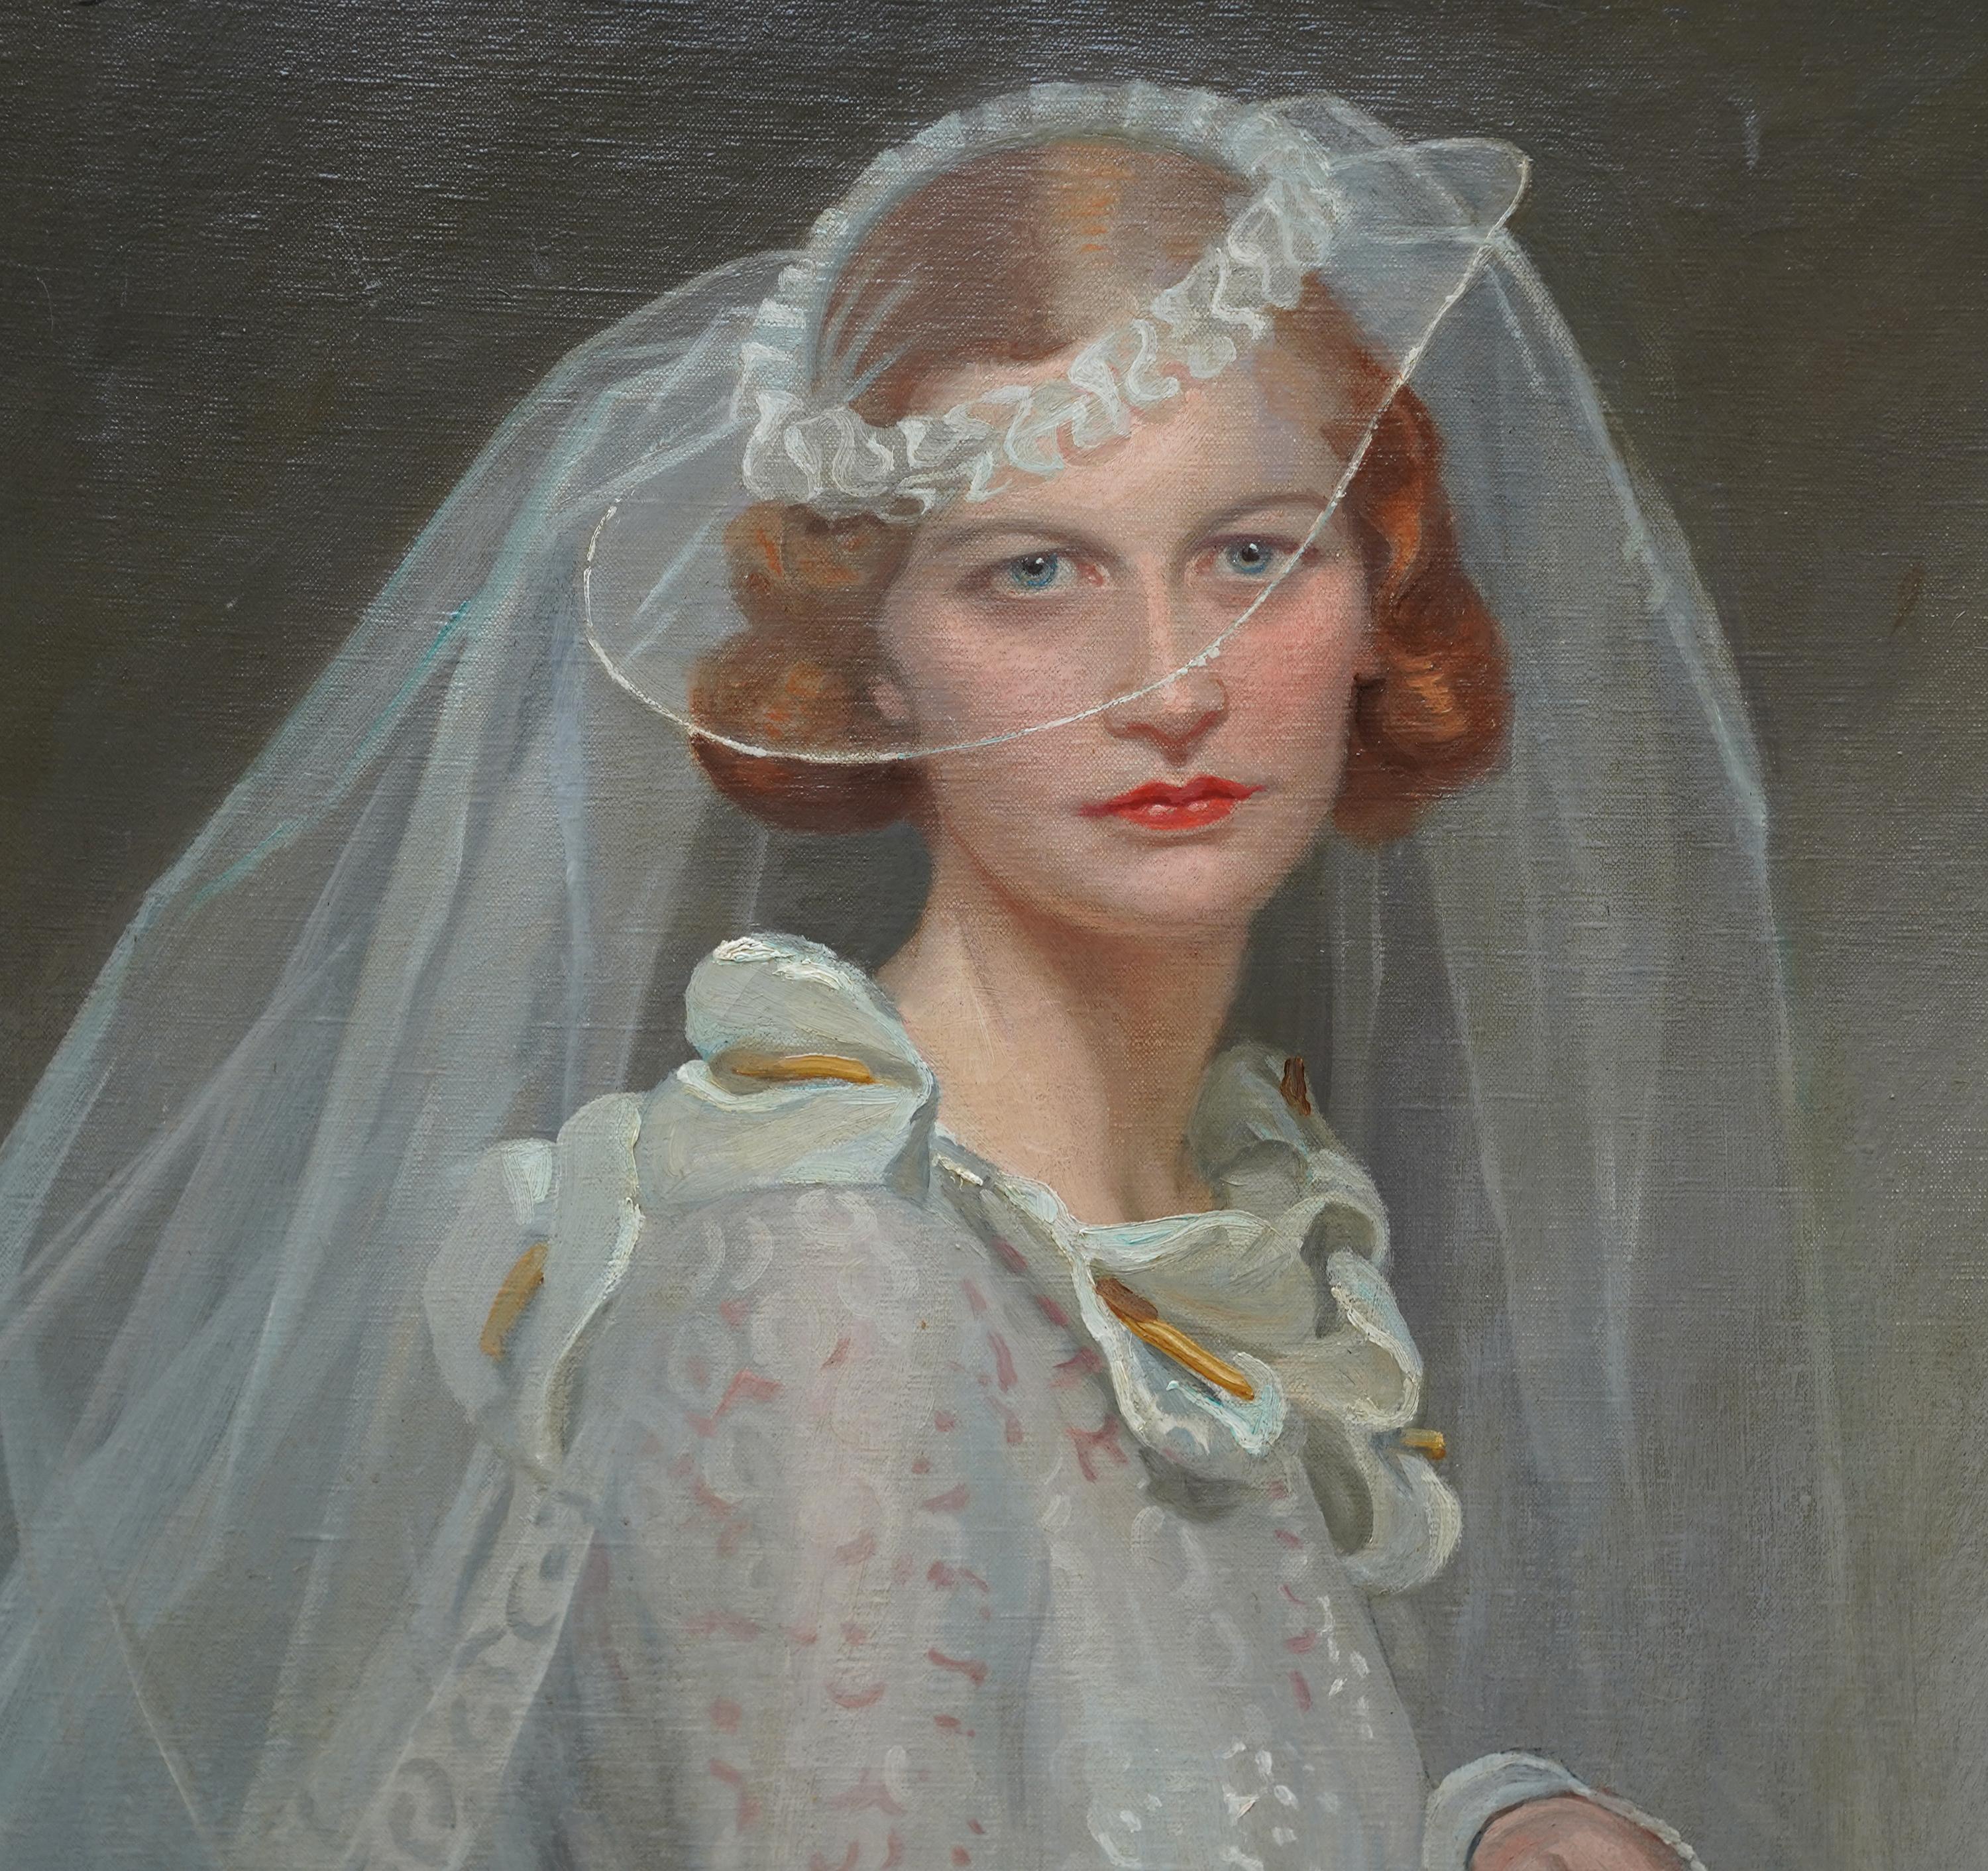 Portrait of a Bride - British 1934 Romantic art female portrait oil painting - Realist Painting by Frank Owen Salisbury